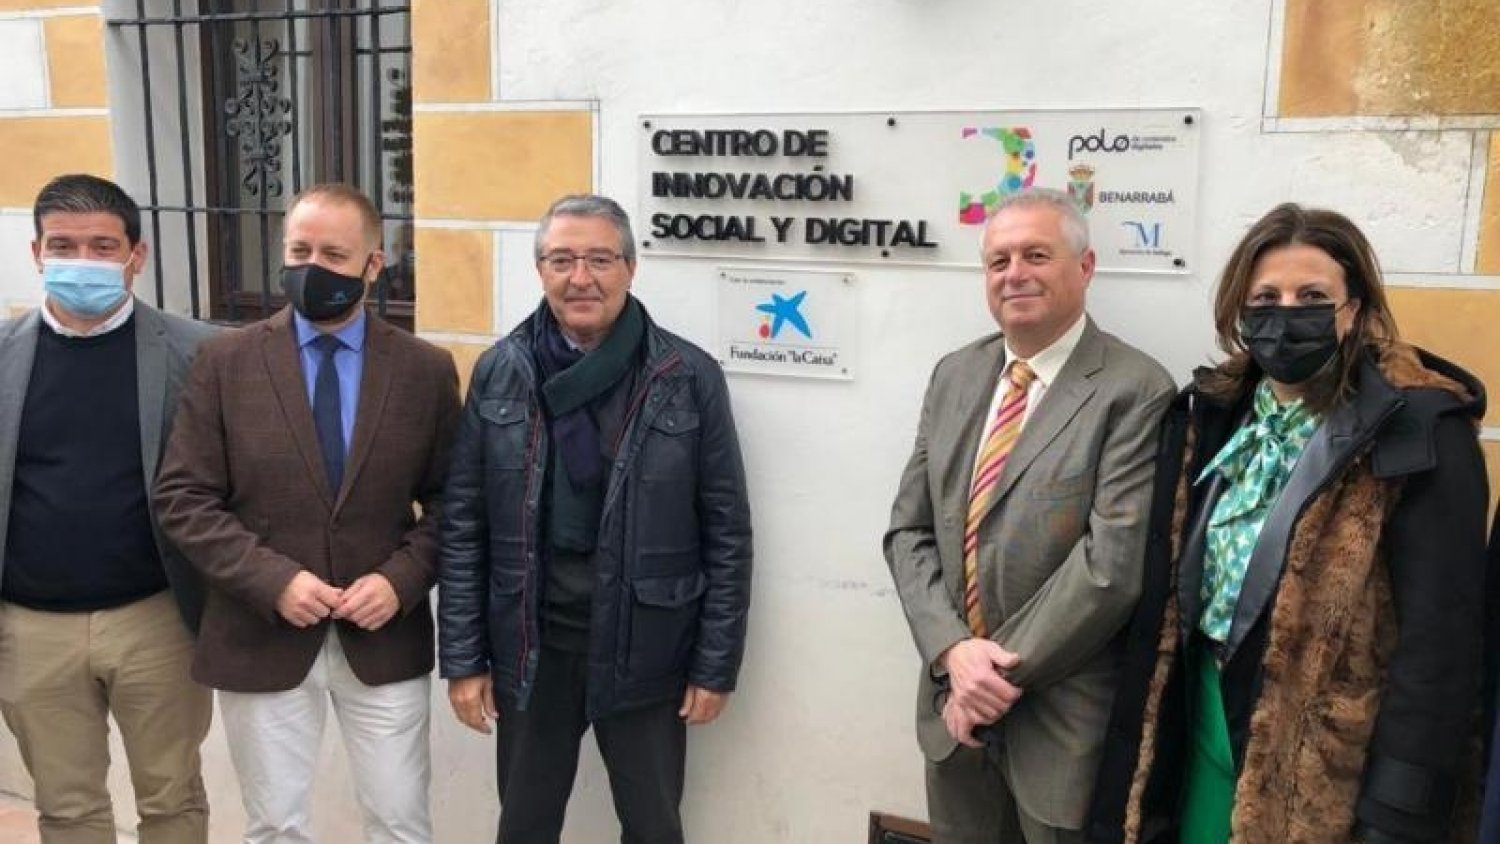 Diputación y el Polo Digital de Málaga impulsan un centro de innovación social y tecnológica en Benarrabá